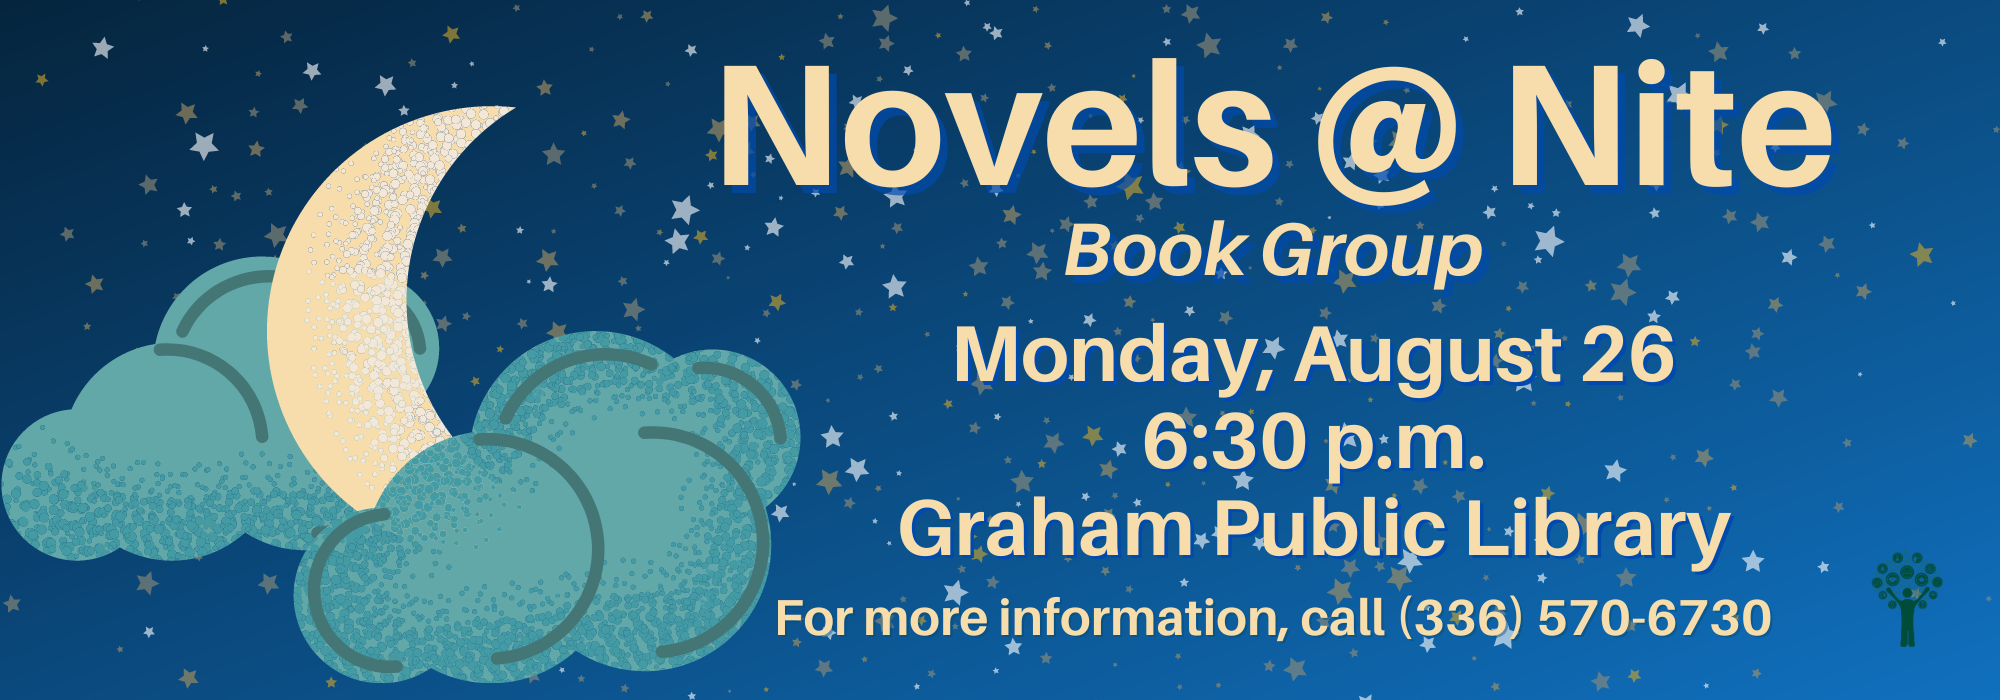 8.26 at 630 pm - Novels @ Nite at Graham